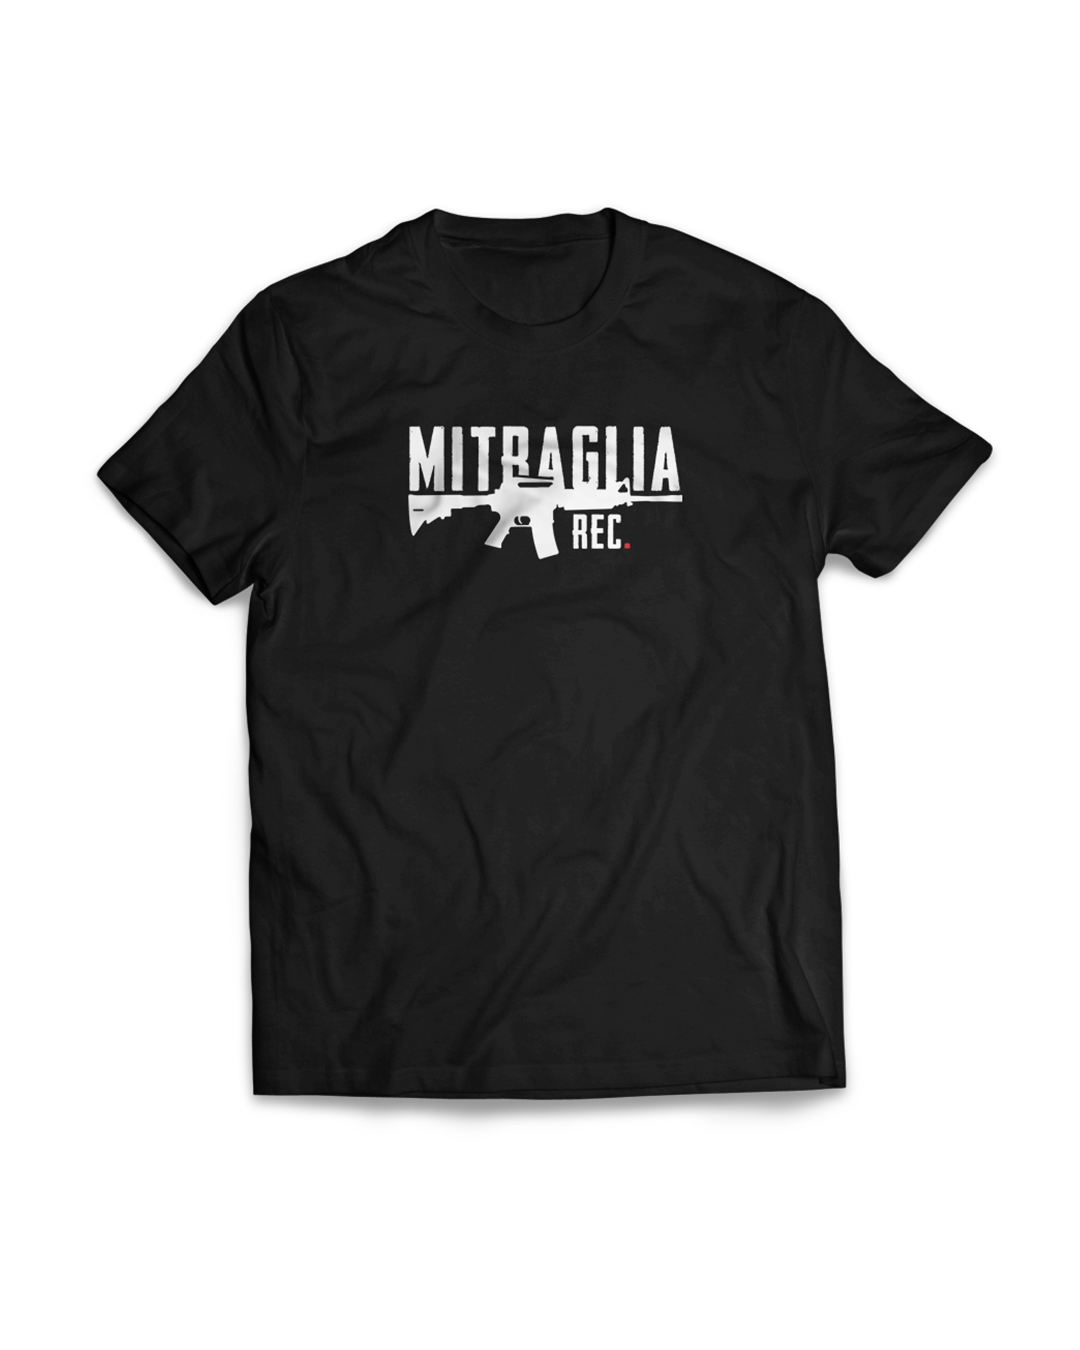 Mitraglia Rec. - Official Black T-Shirt